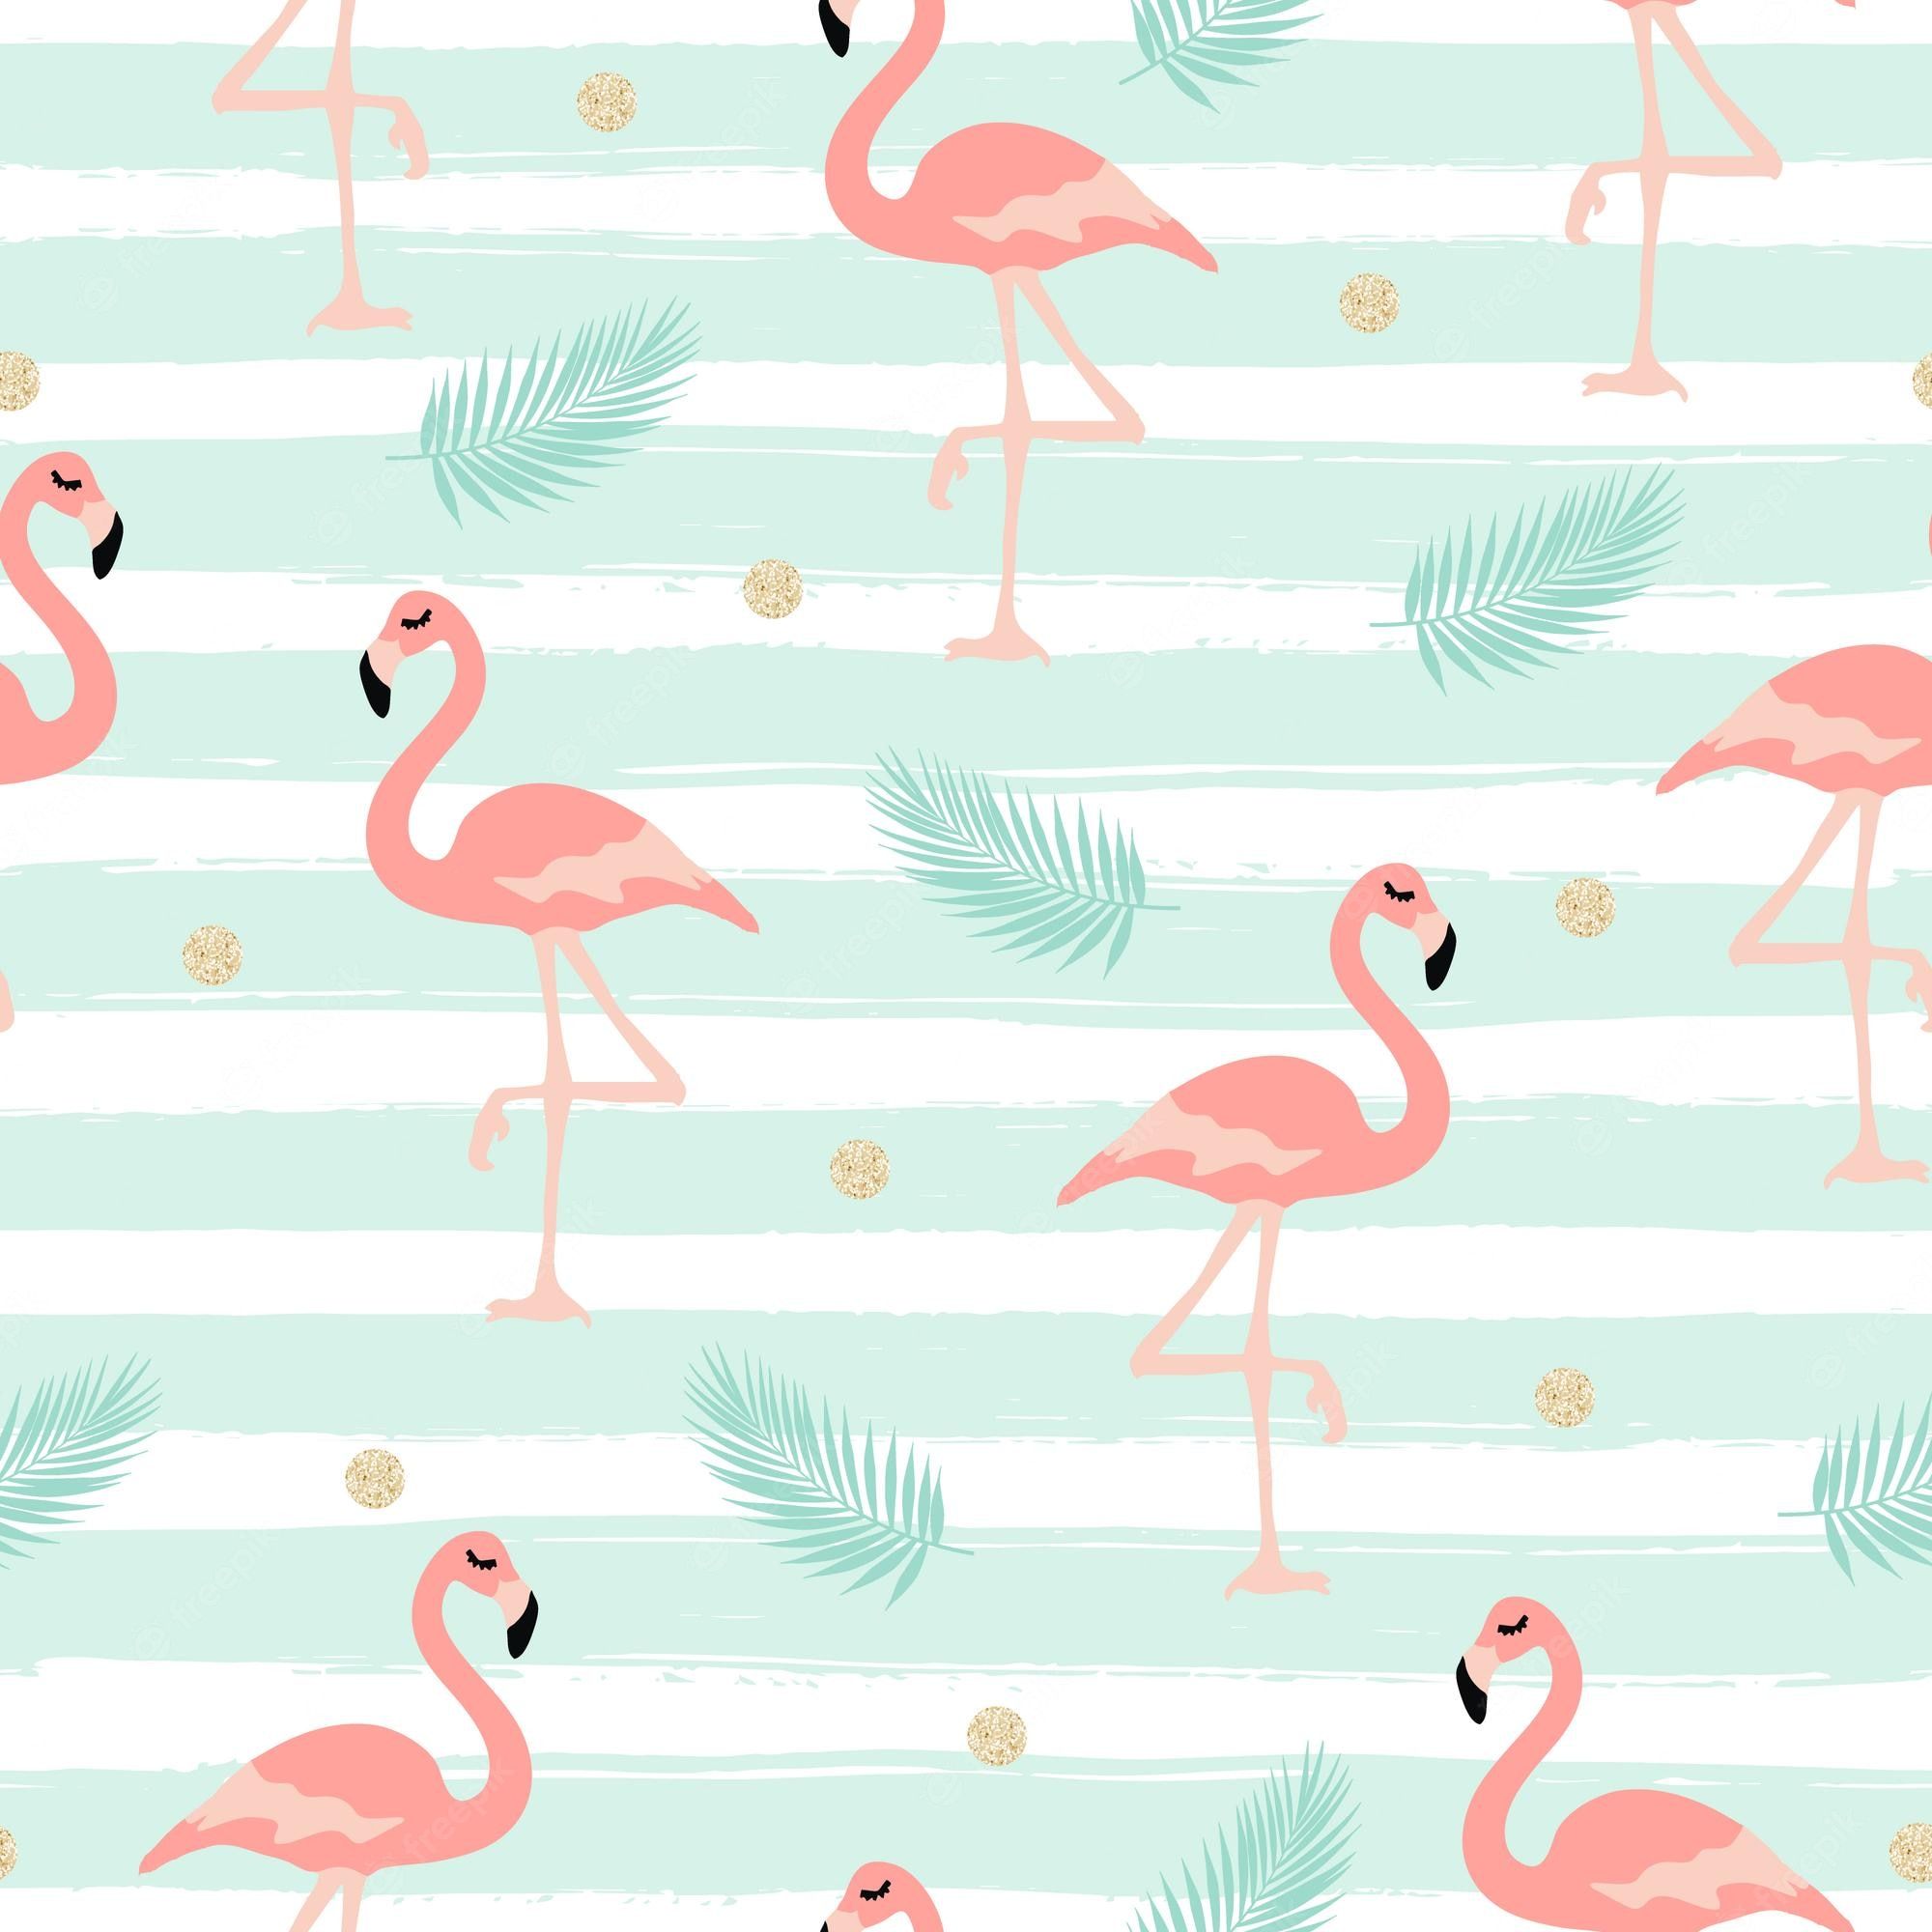  Flamingo Hintergrundbild 2000x2000. Flamingo Background Image